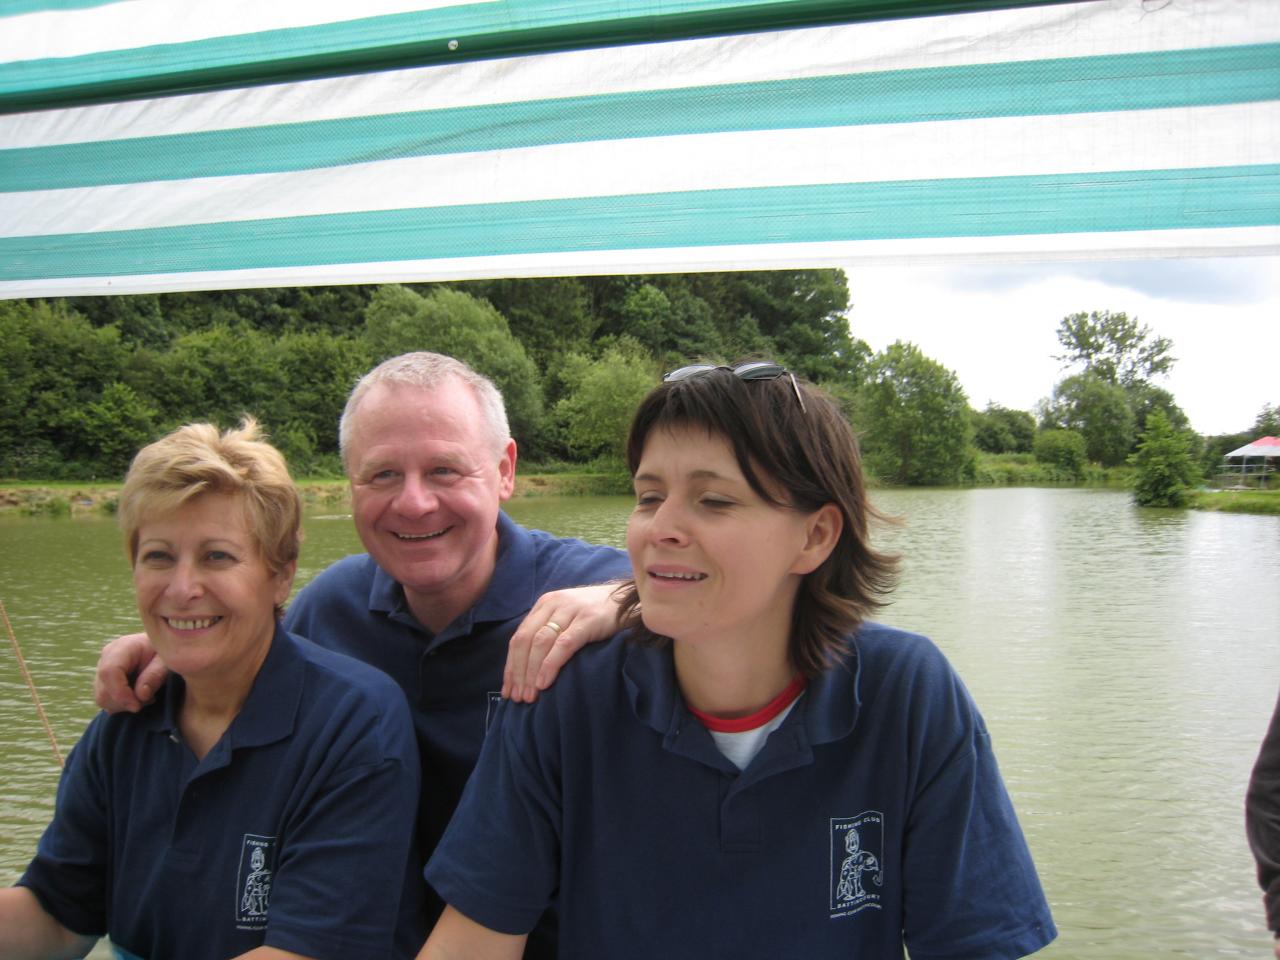 Ivana,Michel,Marjo remontent le Lac